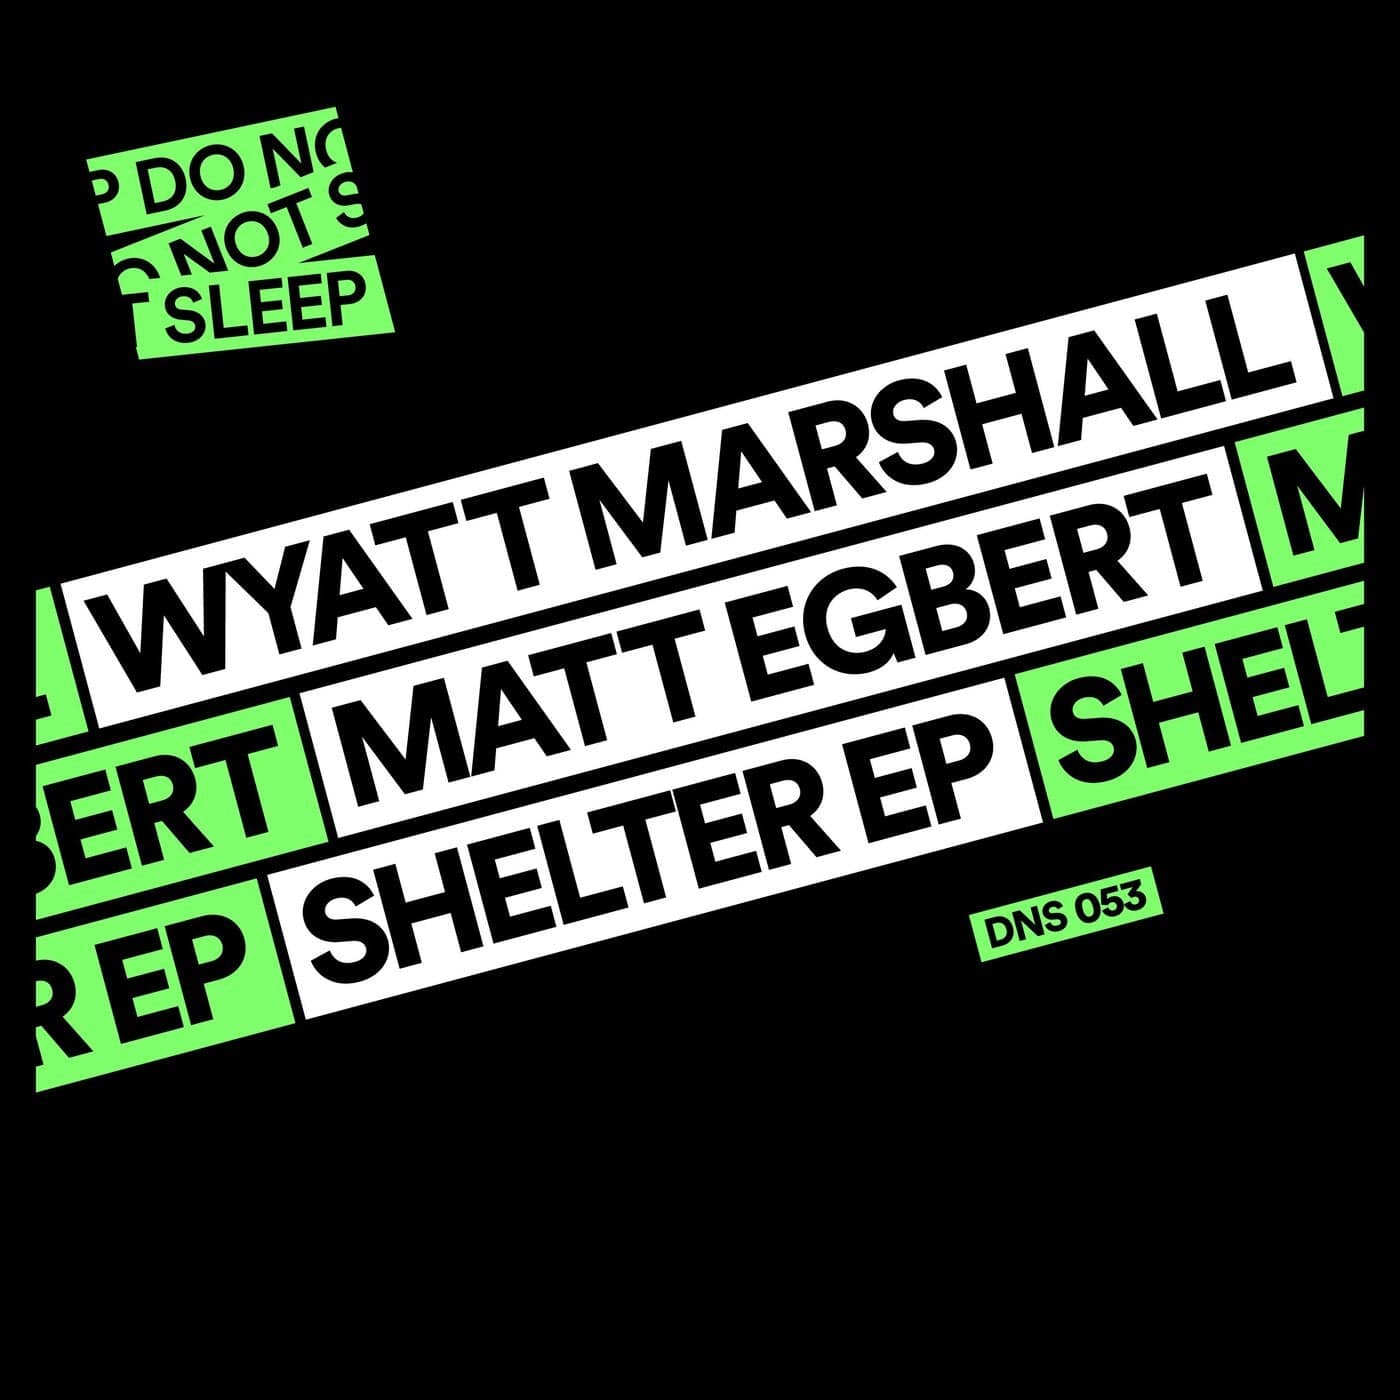 image cover: Matt Egbert, Wyatt Marshall - Shelter EP / DNS053